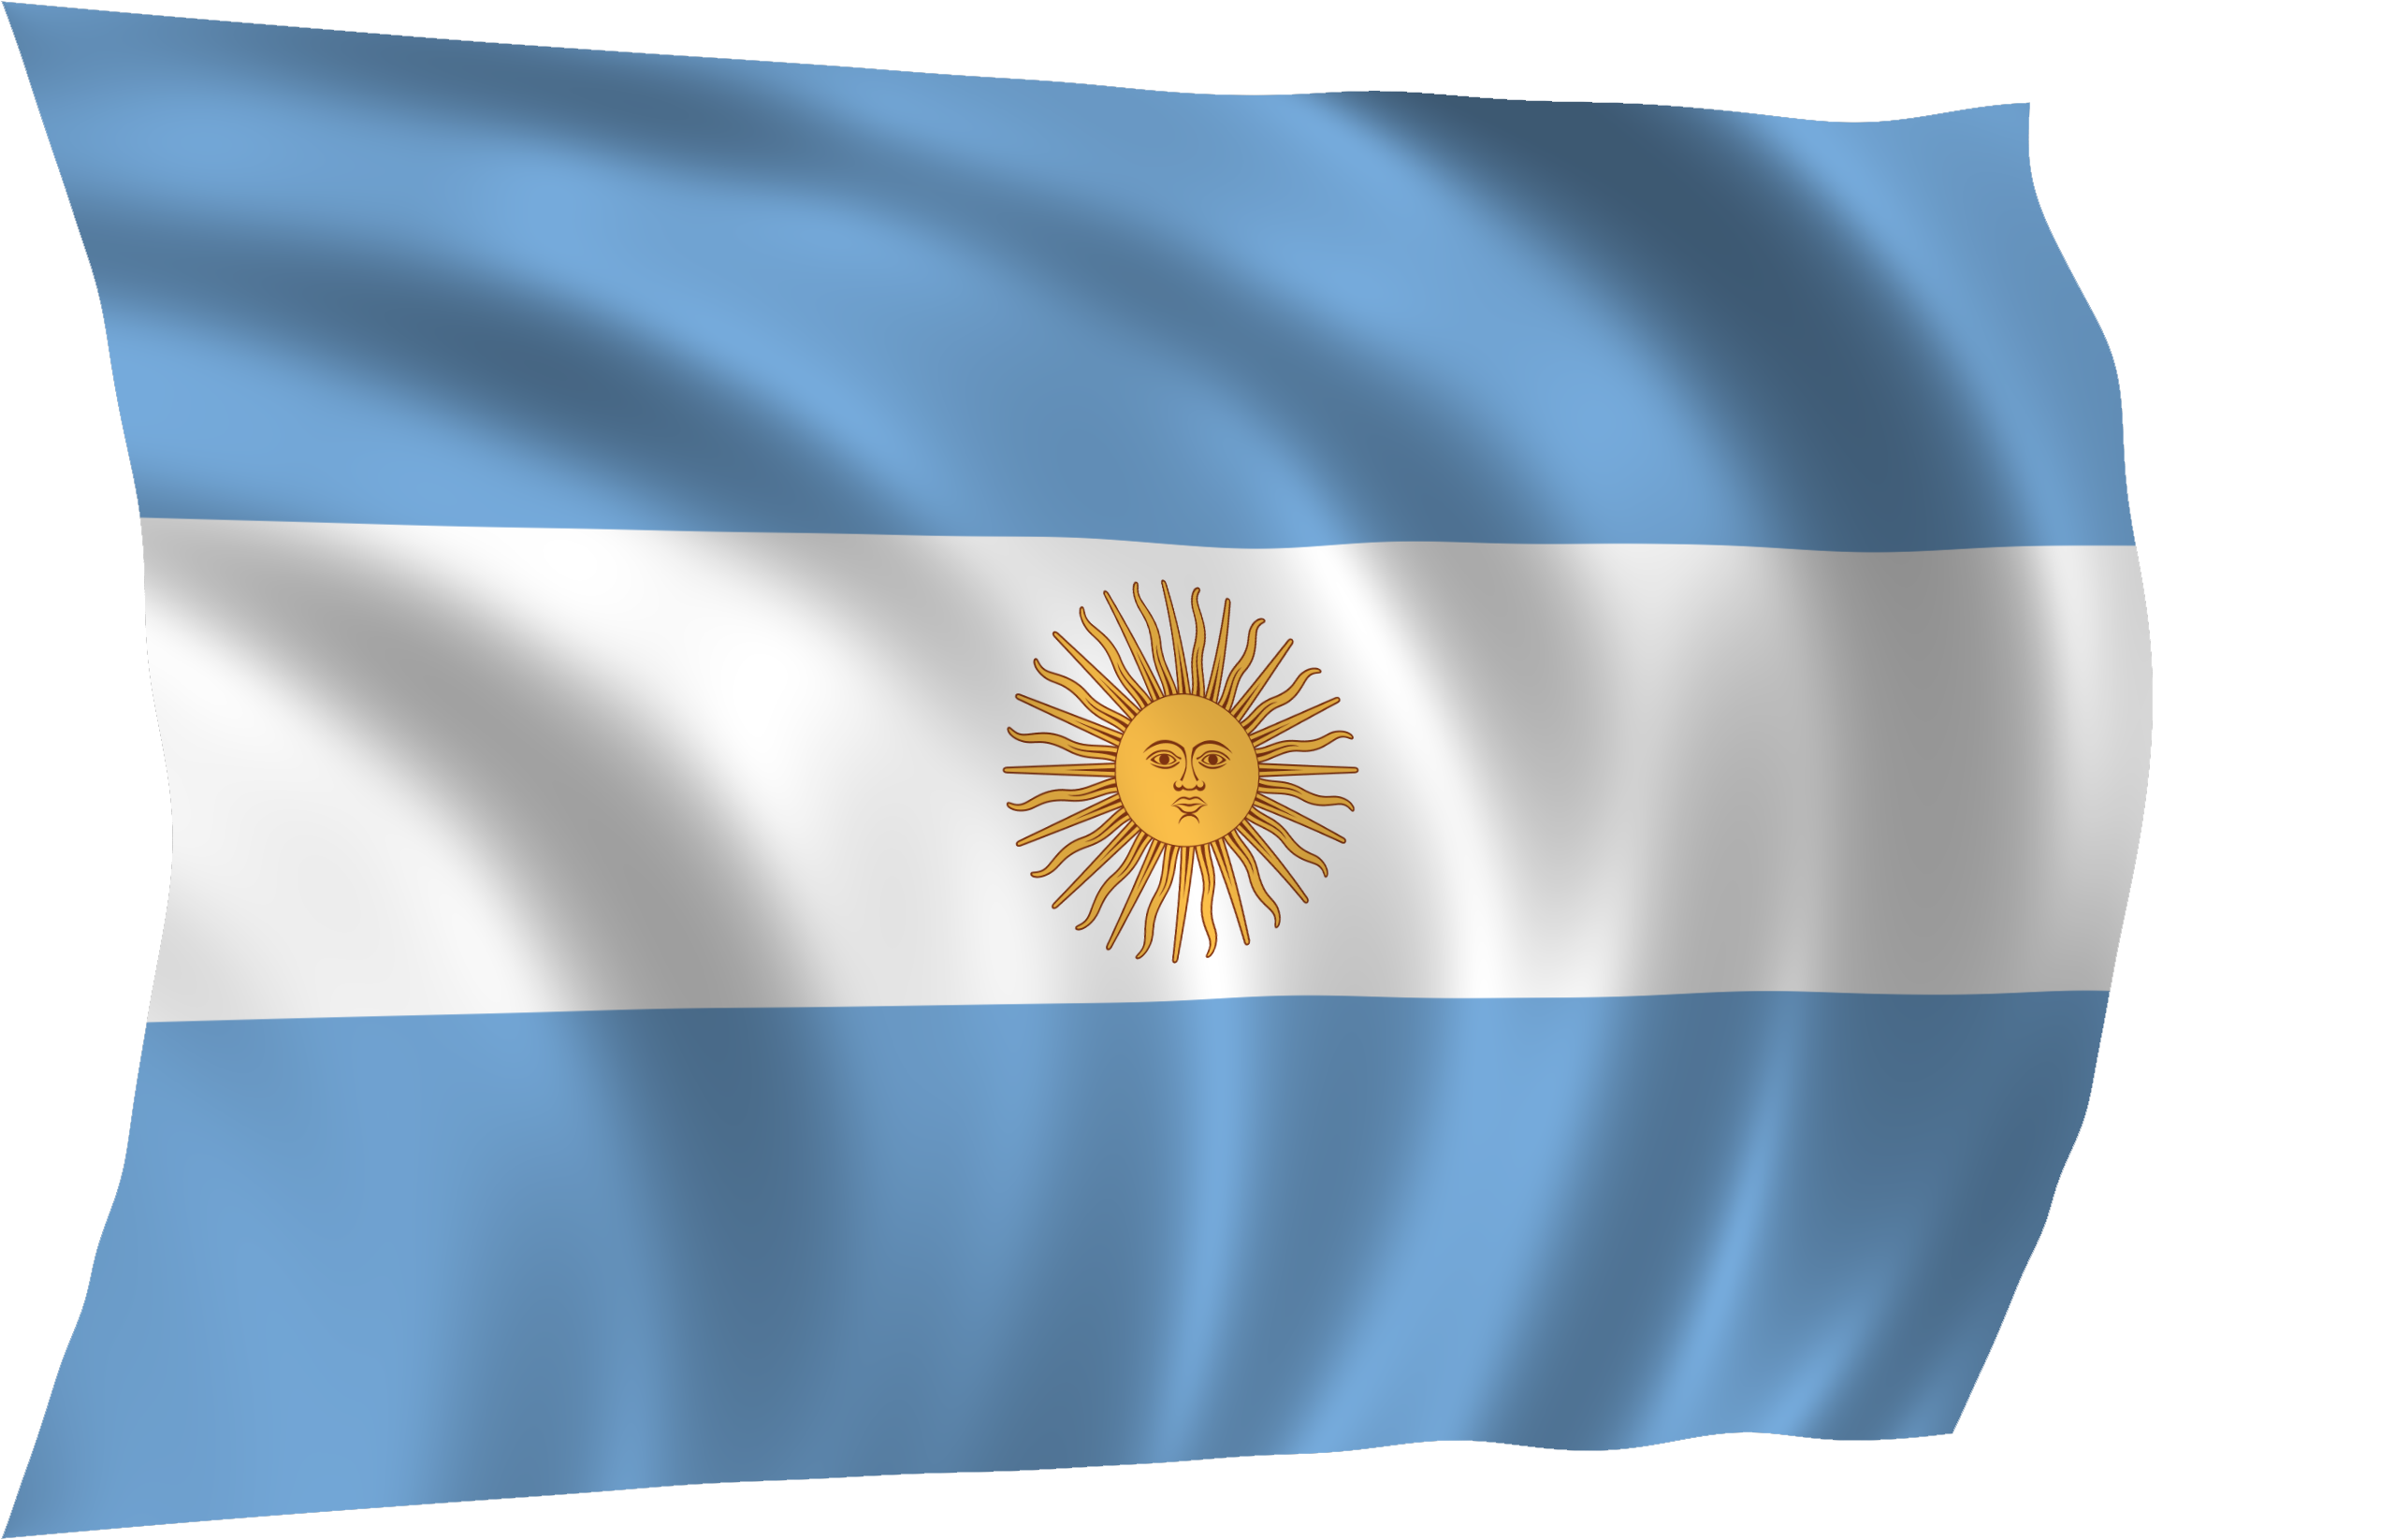 Argentina flag flag argentina free image download